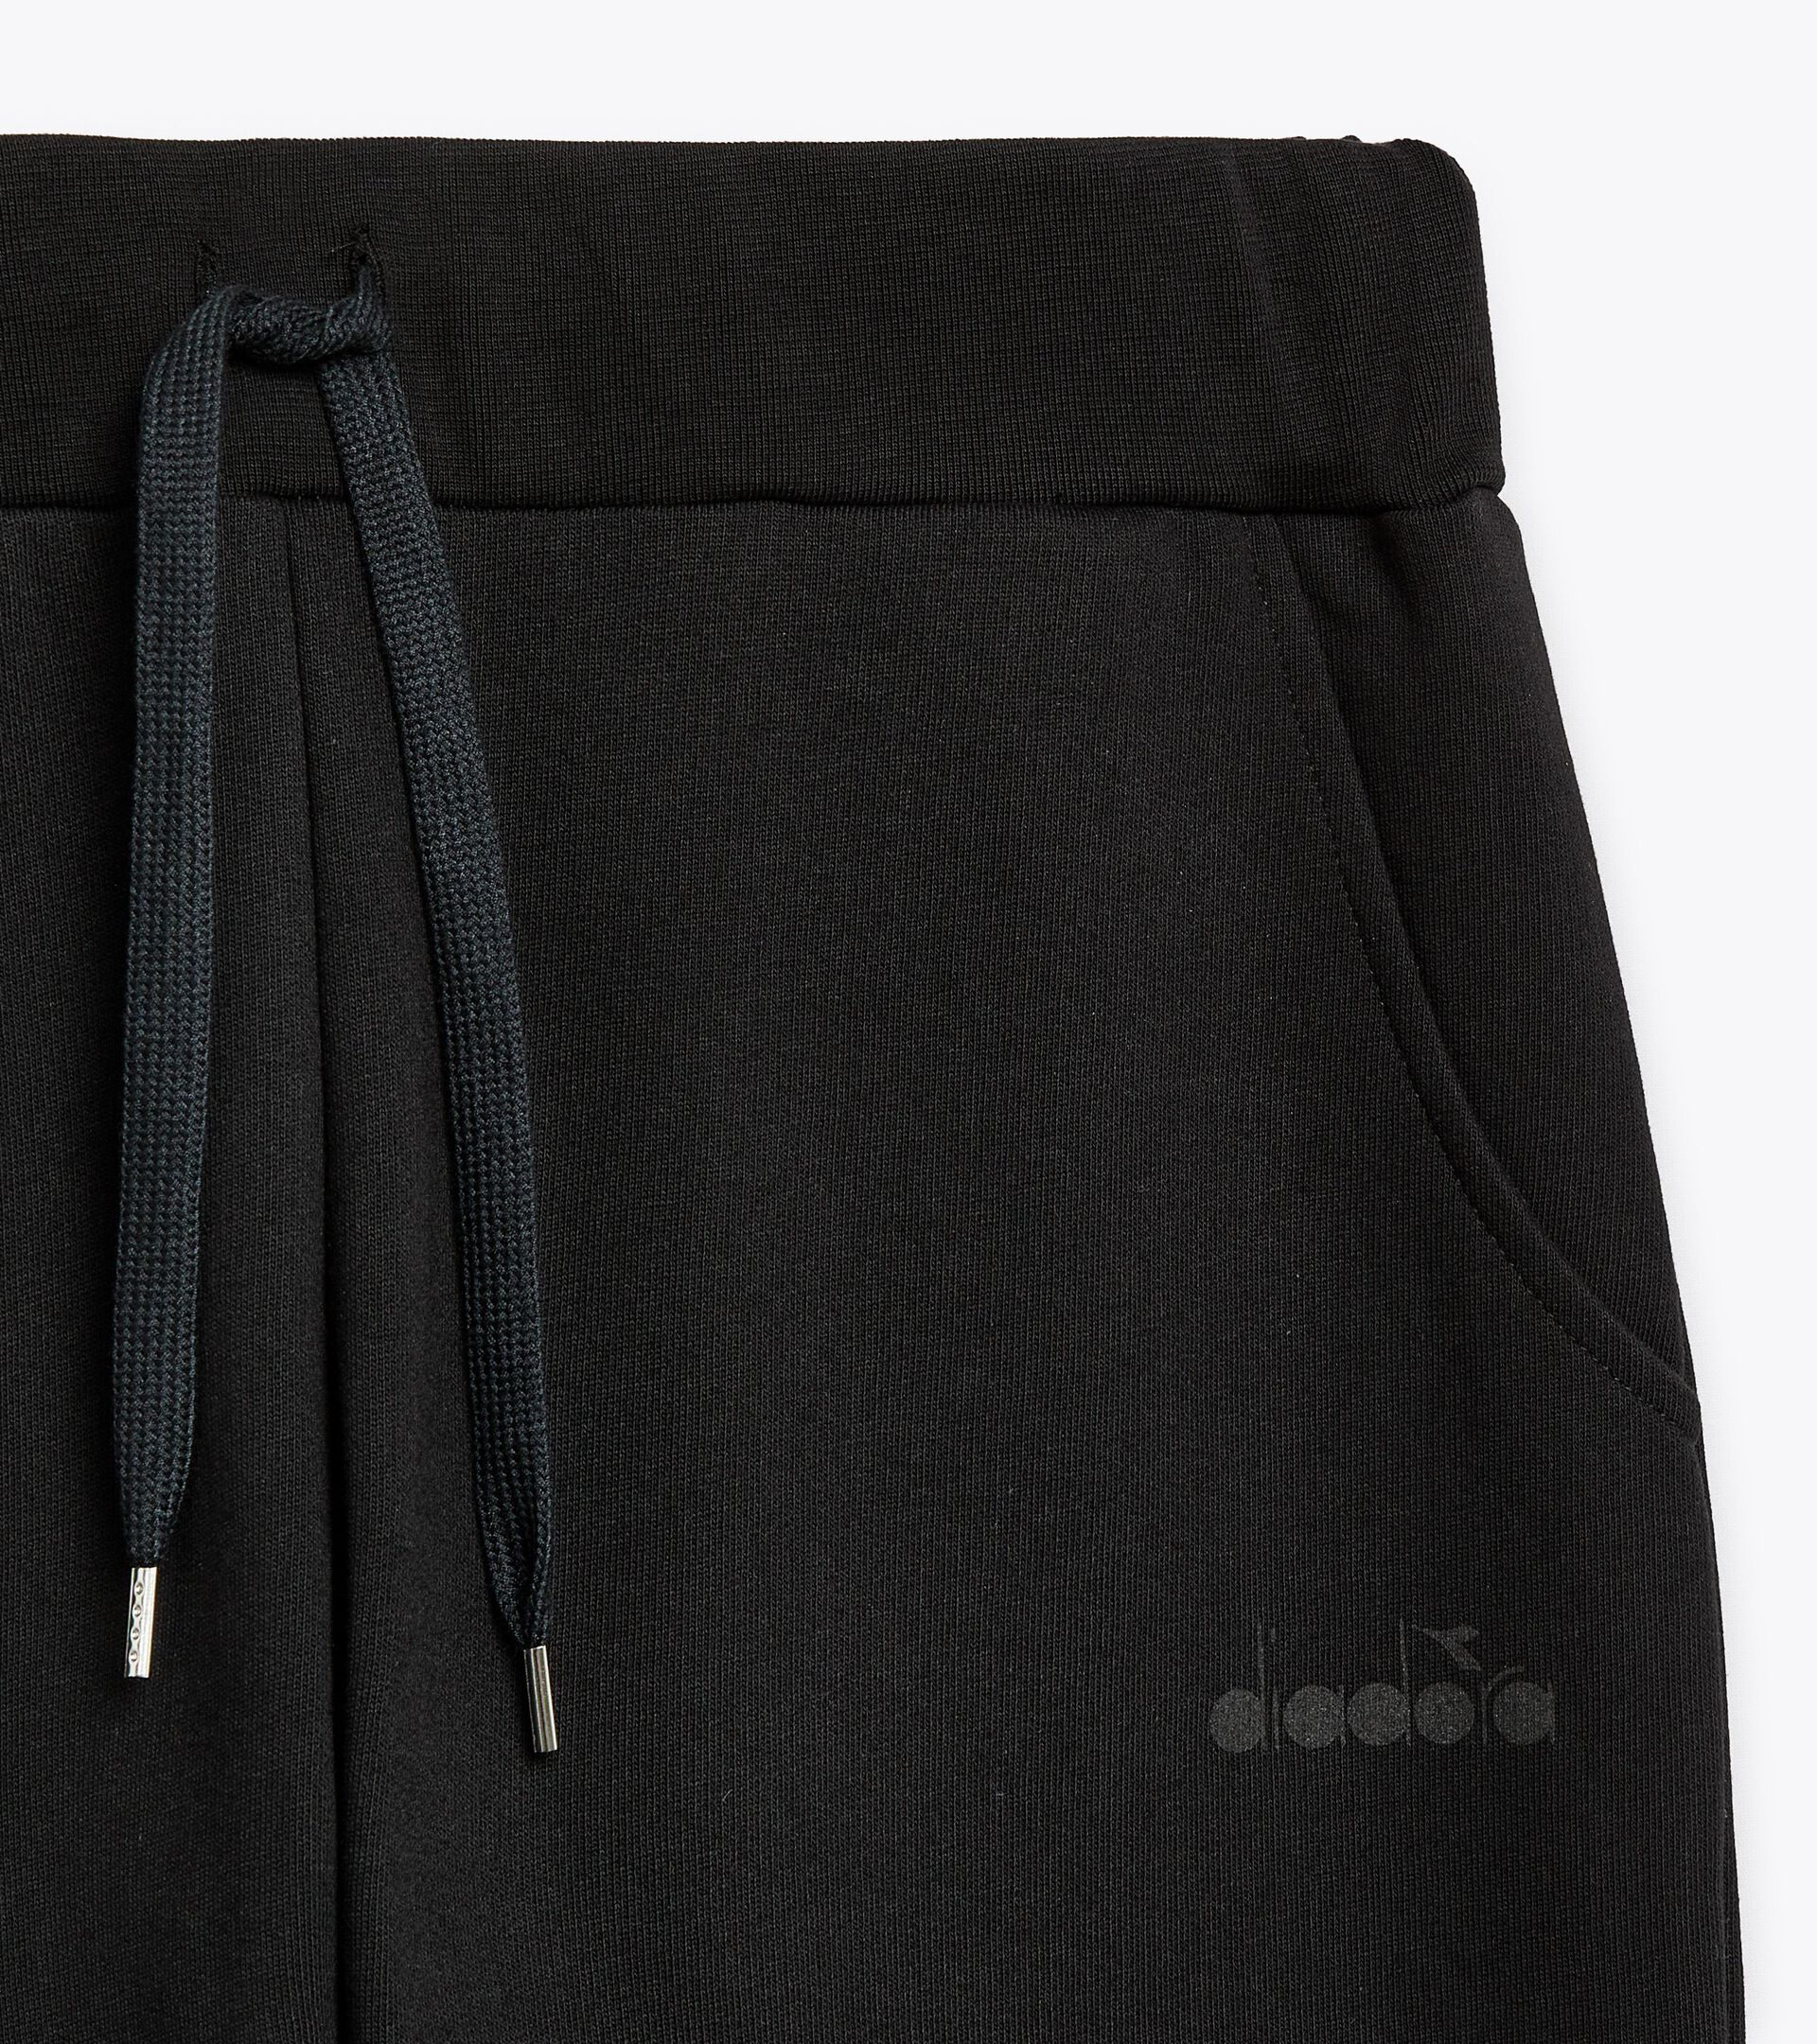 Pantalón deportivo - Made in Italy - Gender neutral PANTS LOGO NEGRO - Diadora